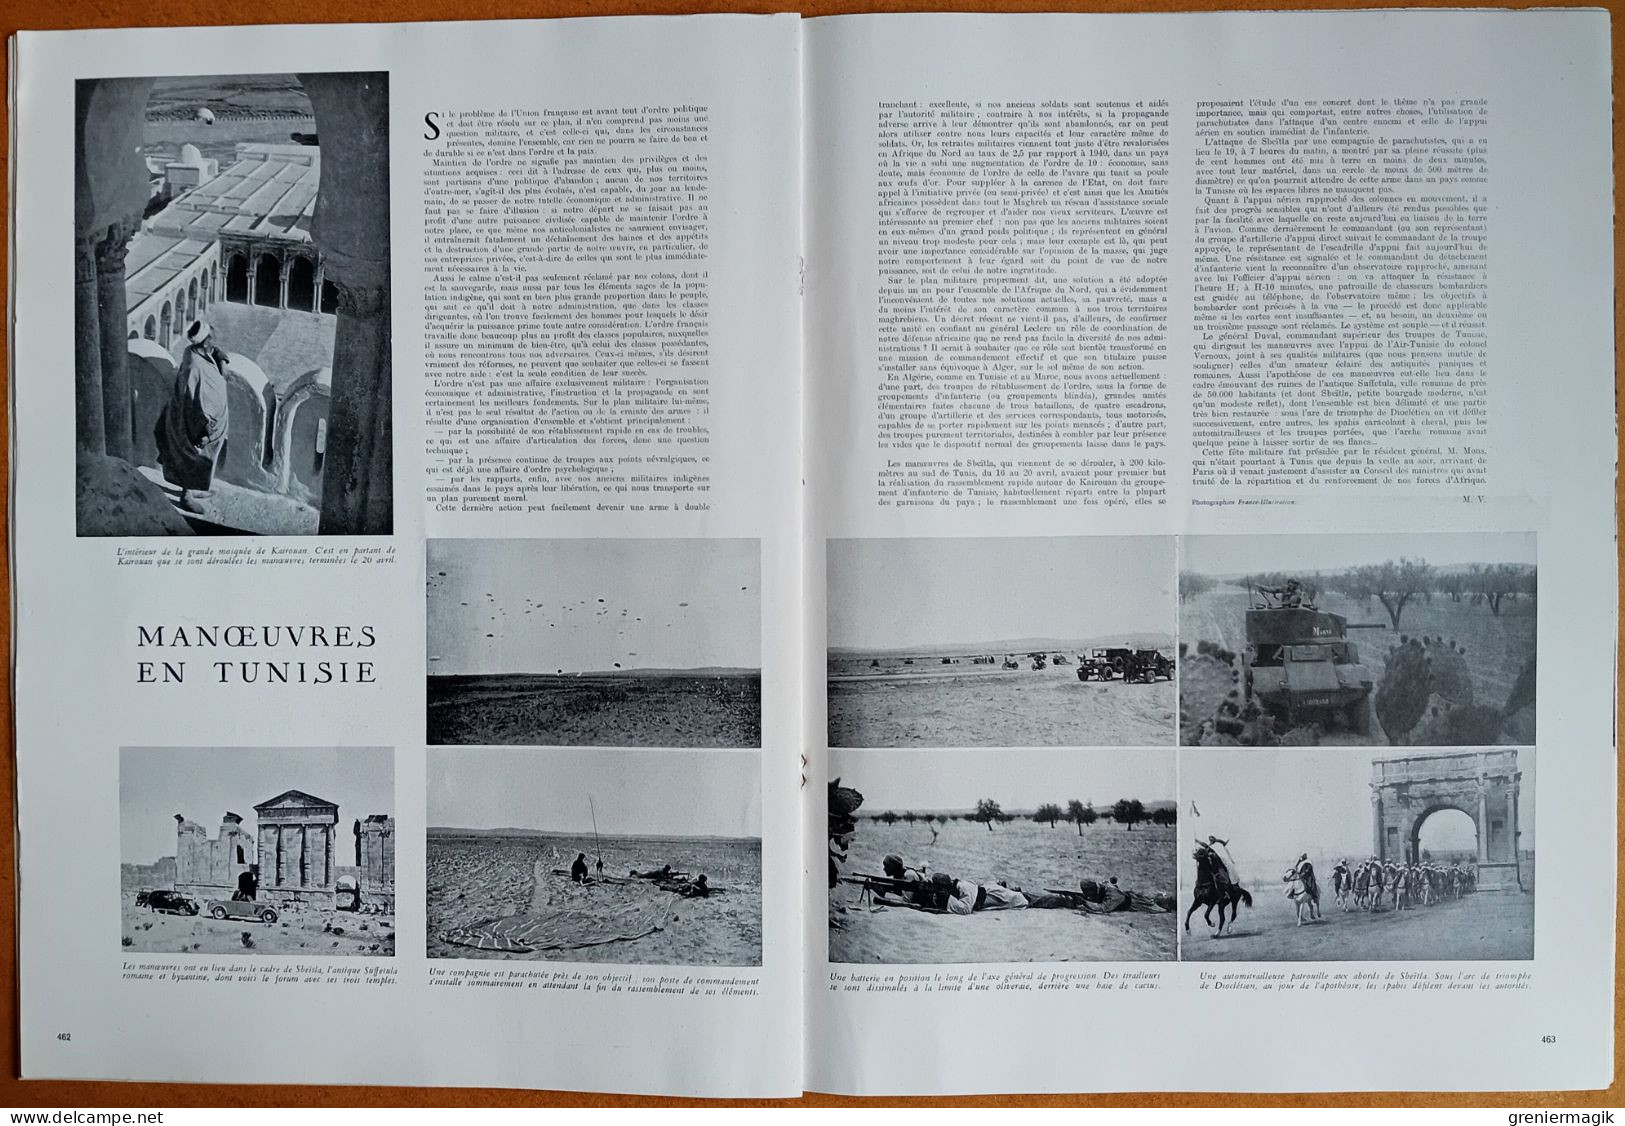 France Illustration N°84 10/05/1947 Musée de la Synagogue/Pont de Bullay Allemagne/Tibet/Tunisie/1er mai de crise